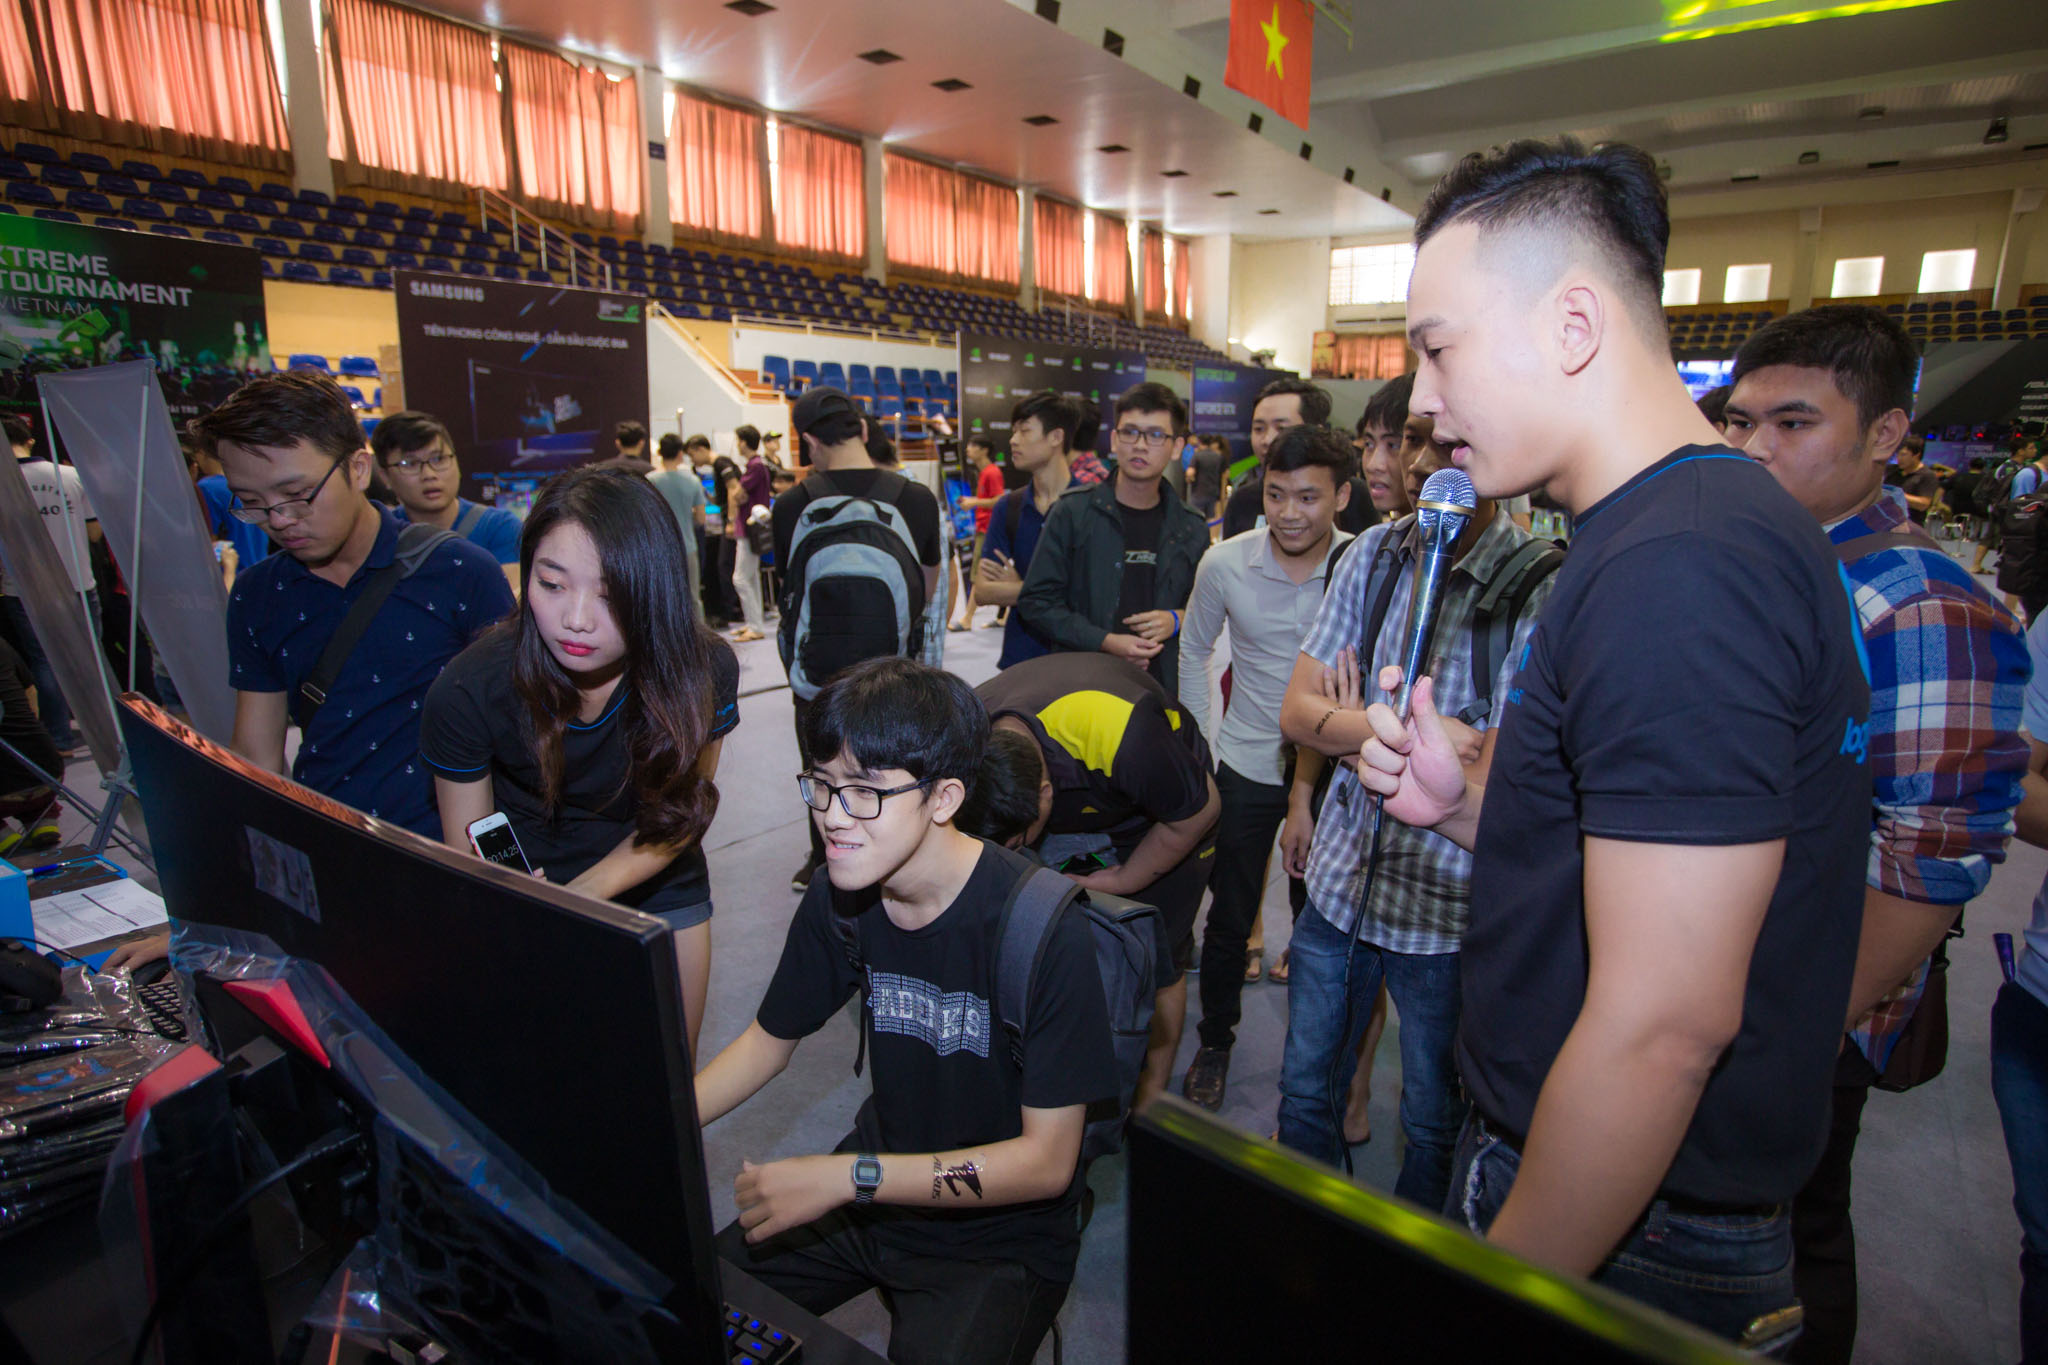 "Cơn lốc" Geforce Day 2017 đã đến Hà Nội, trải nghiệm đỉnh cao công nghệ Geforce 10-Series